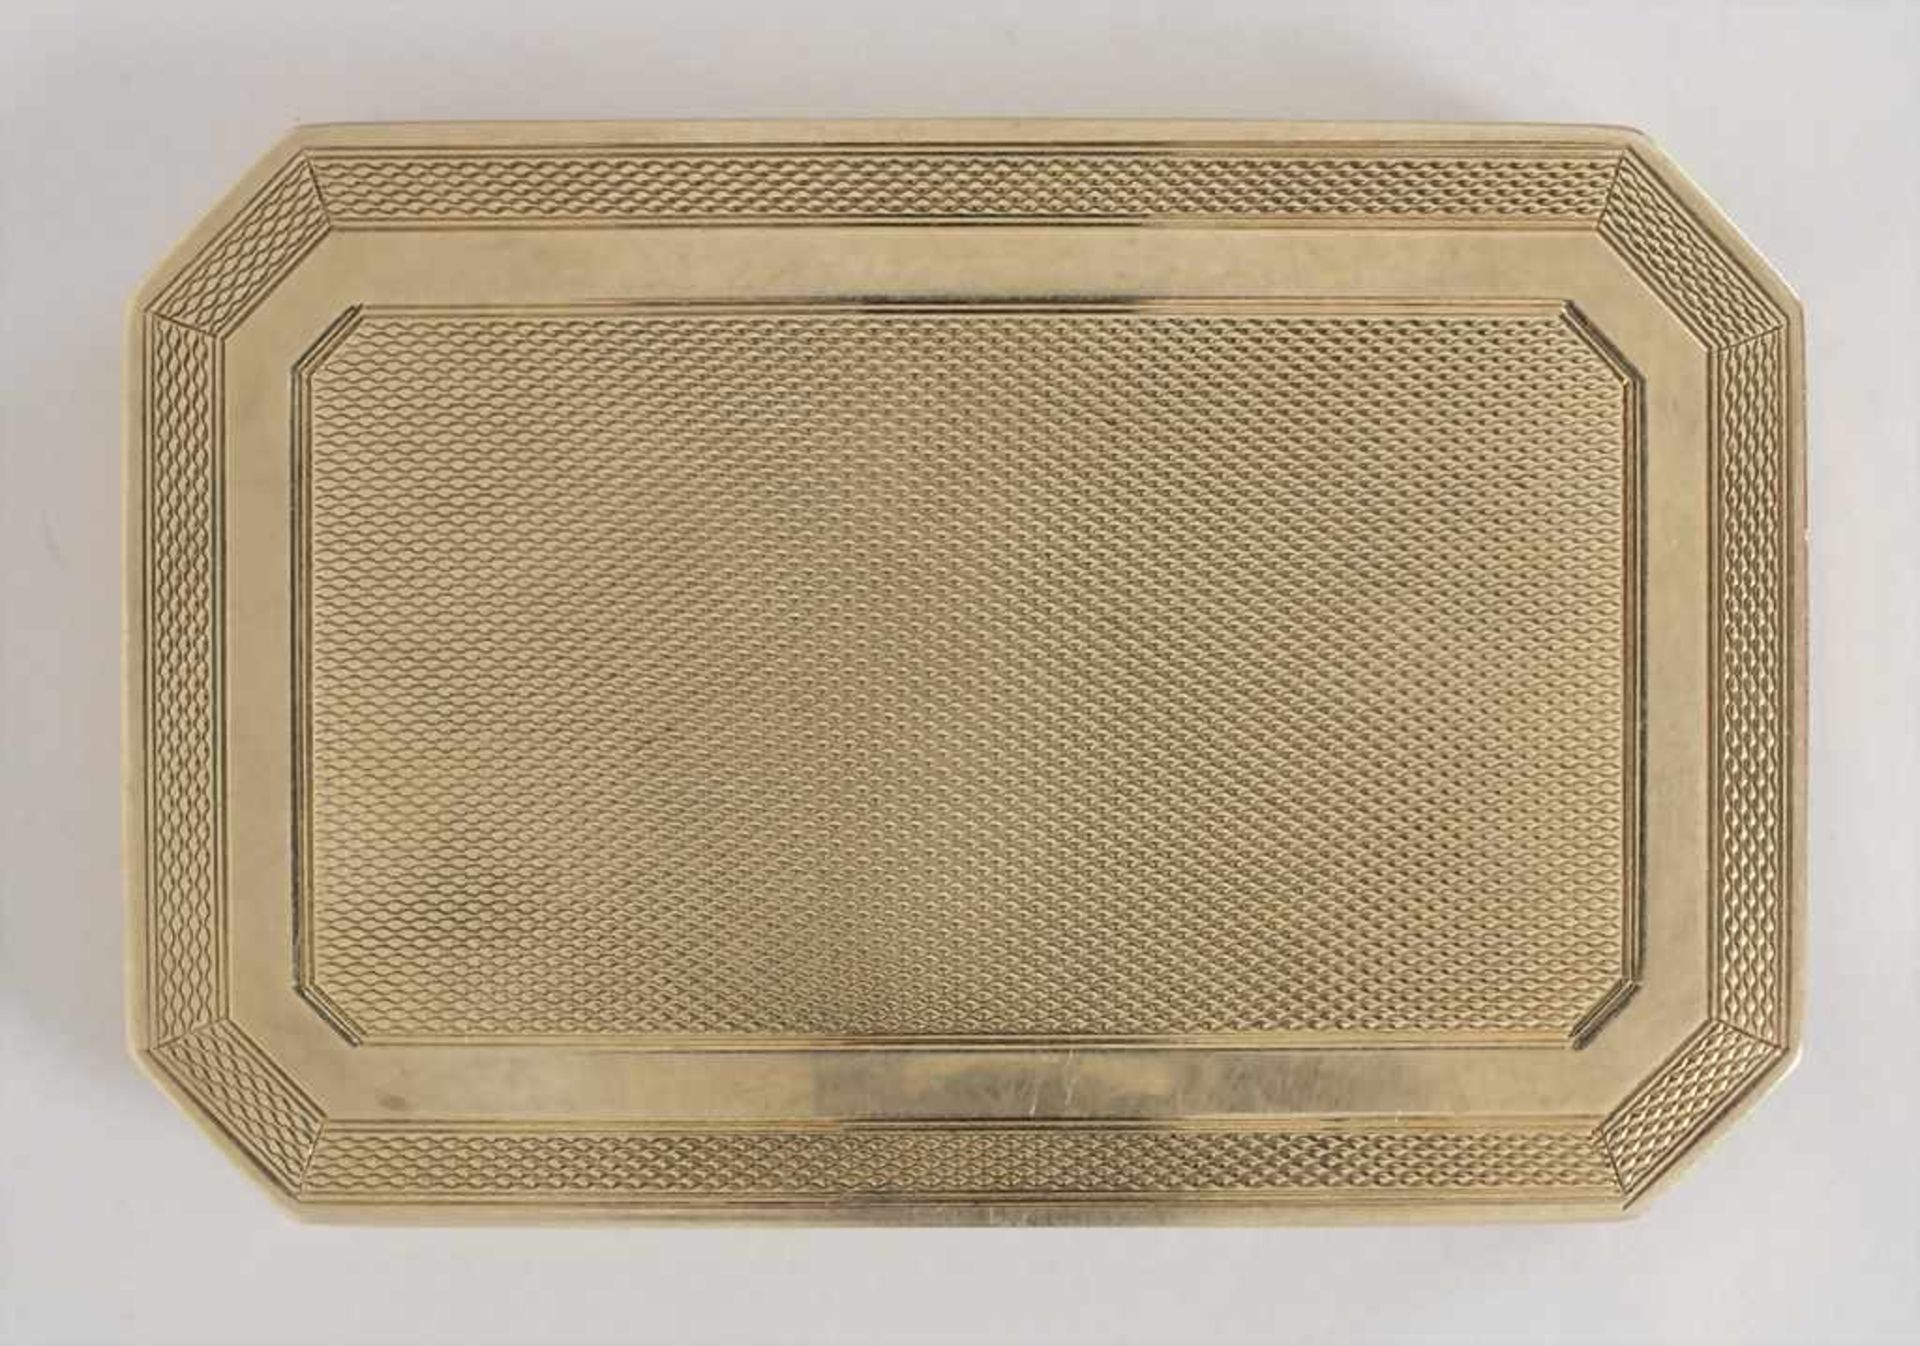 Puderdose / A powder compact, Wien / Vienna, um 1900Material: Gold Au 585/000, 14 Kt. mit Spiegel, - Image 2 of 4